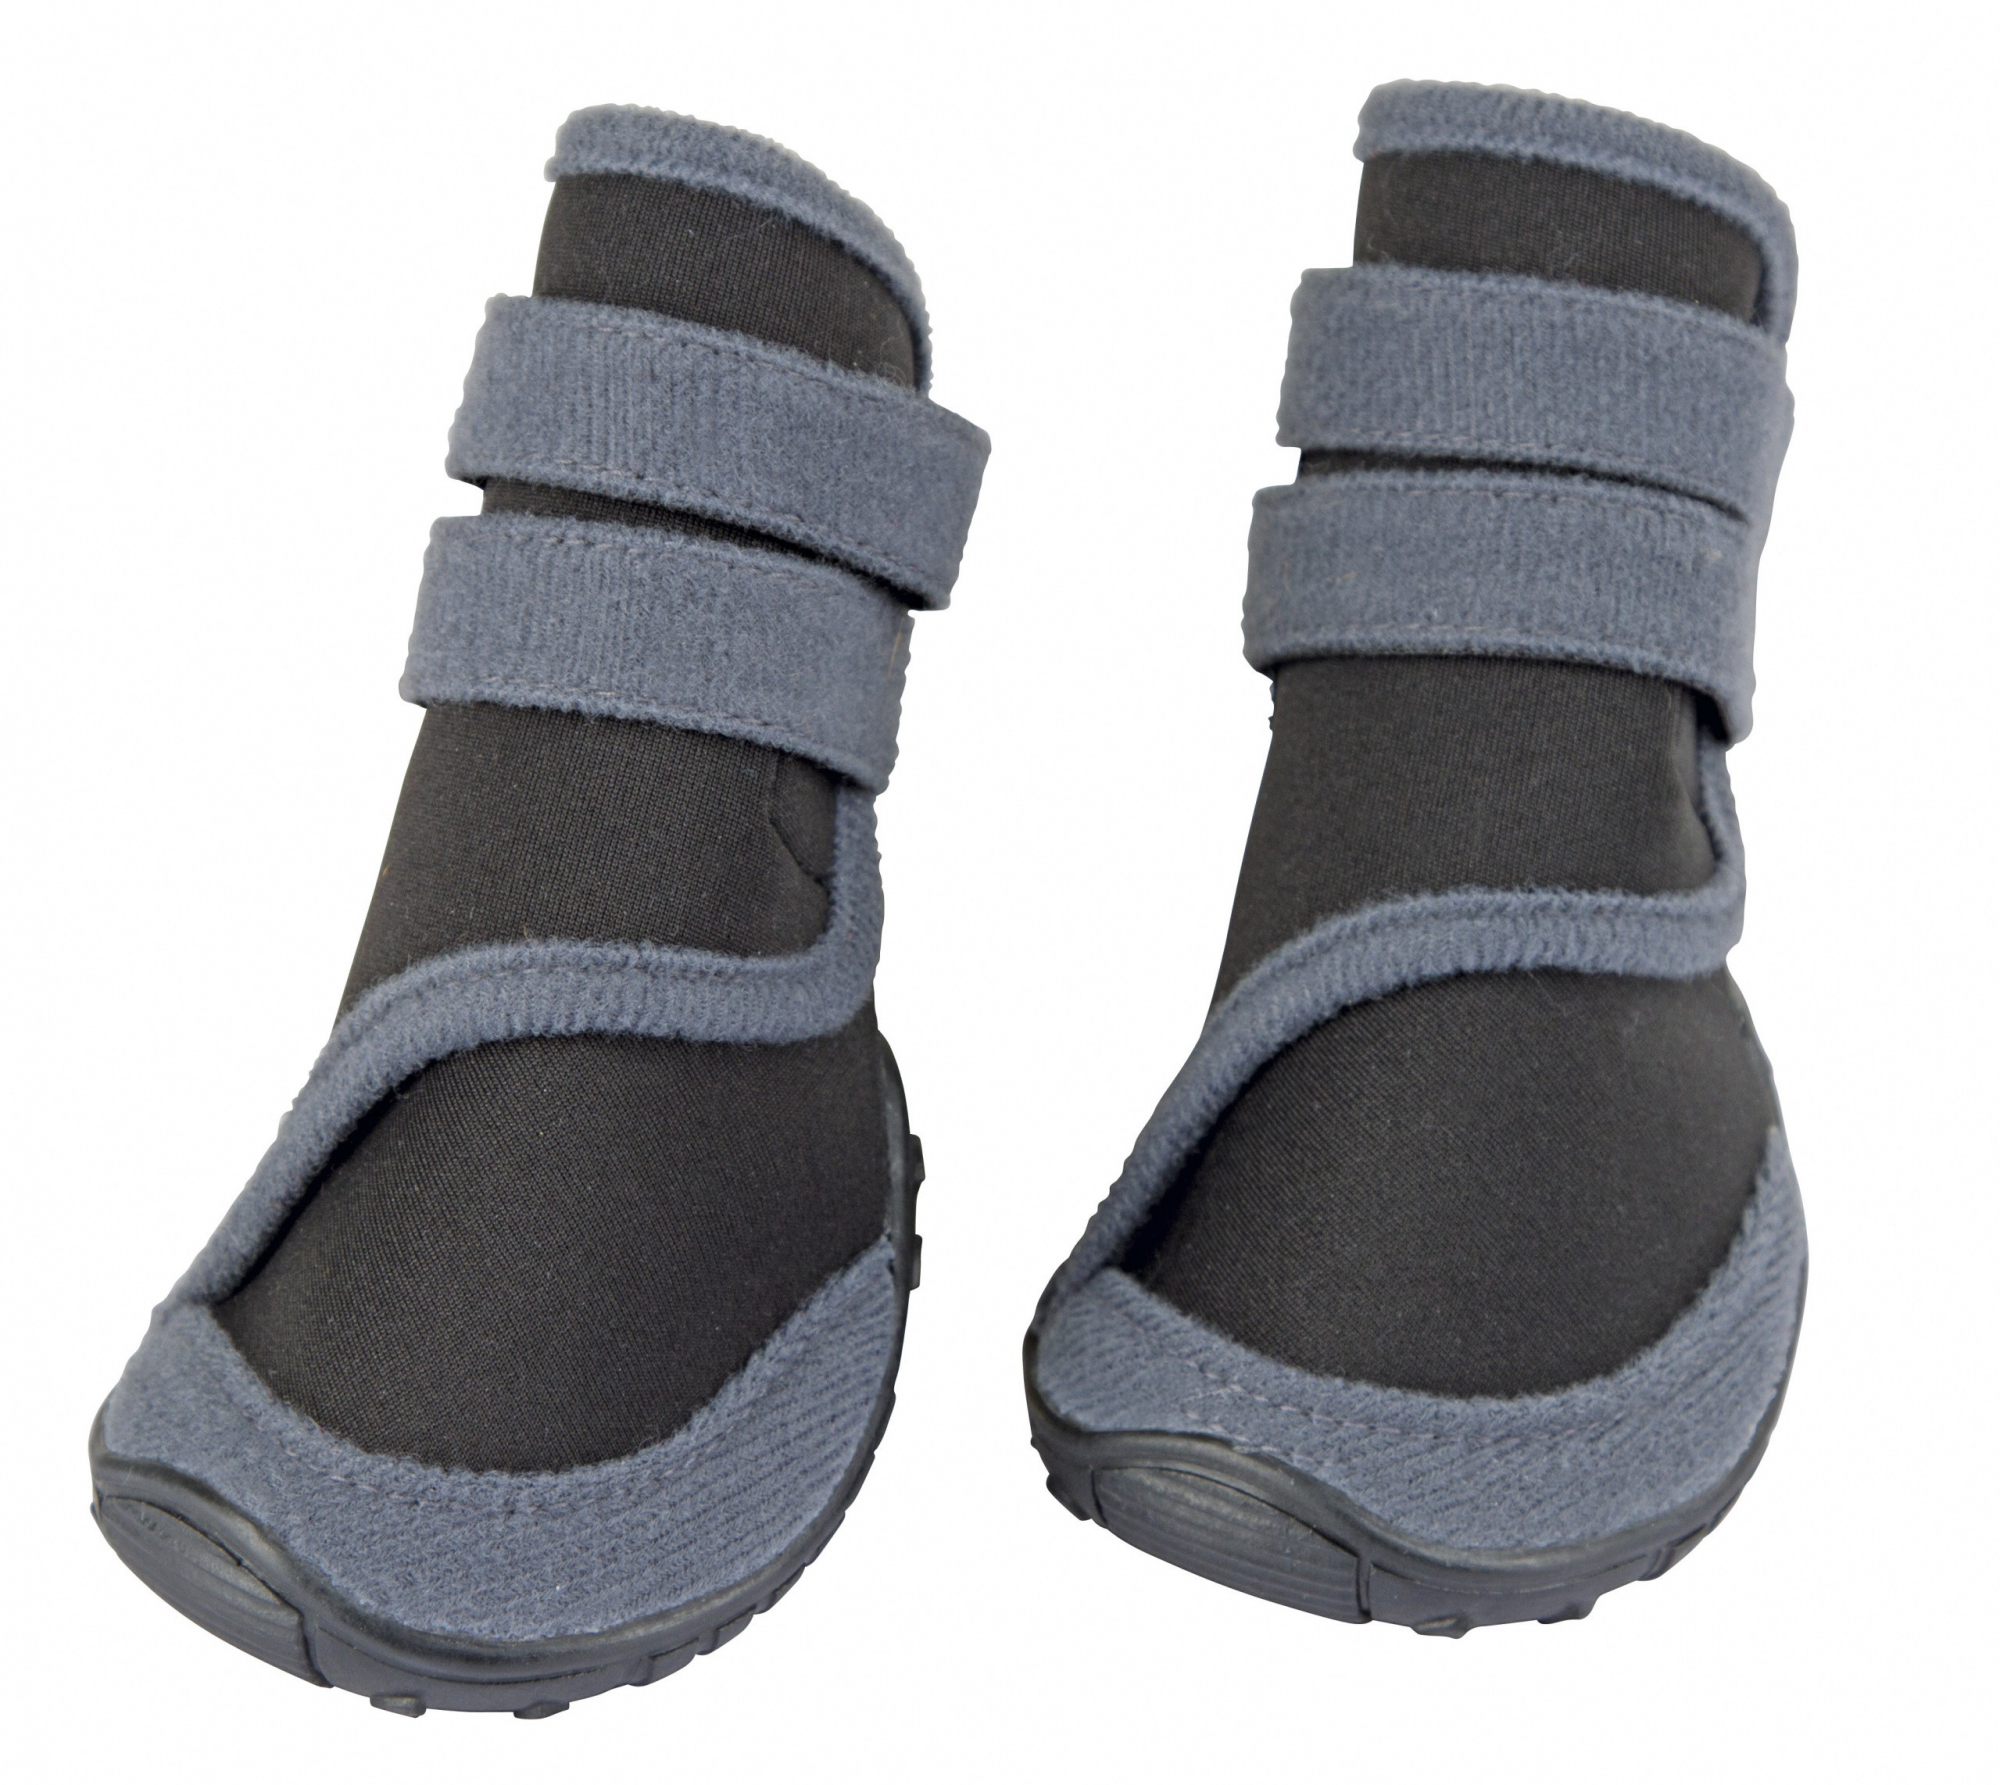 Zapatos Active gris/negro para puerros